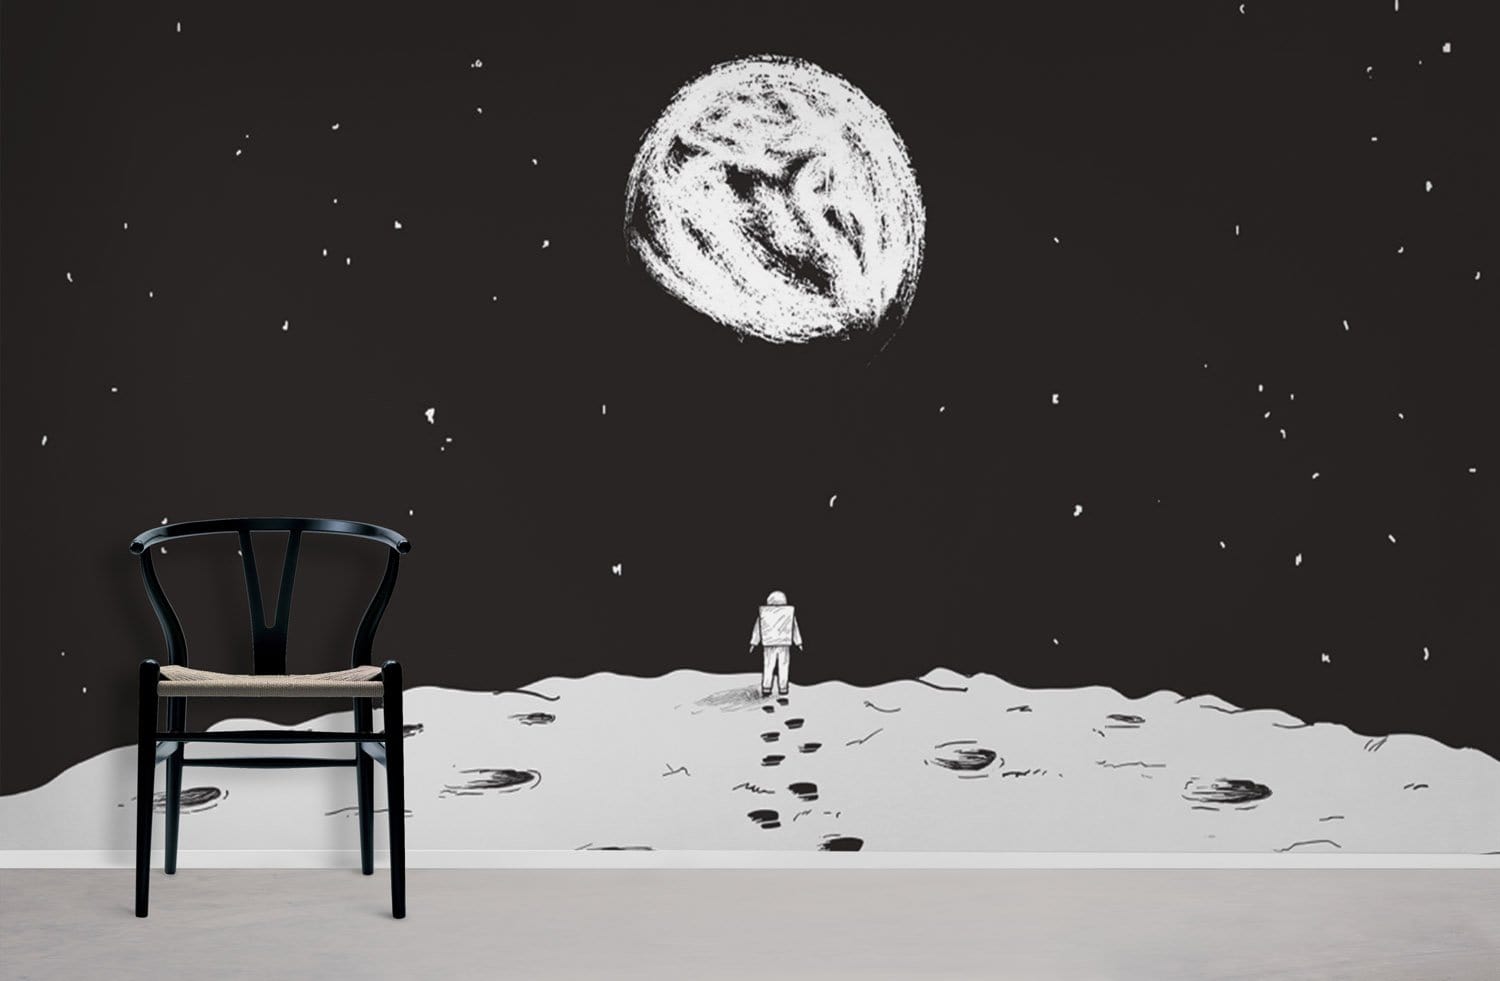 Lune atterrissage en noir et blanc papier peint mural pour décoration intérieure